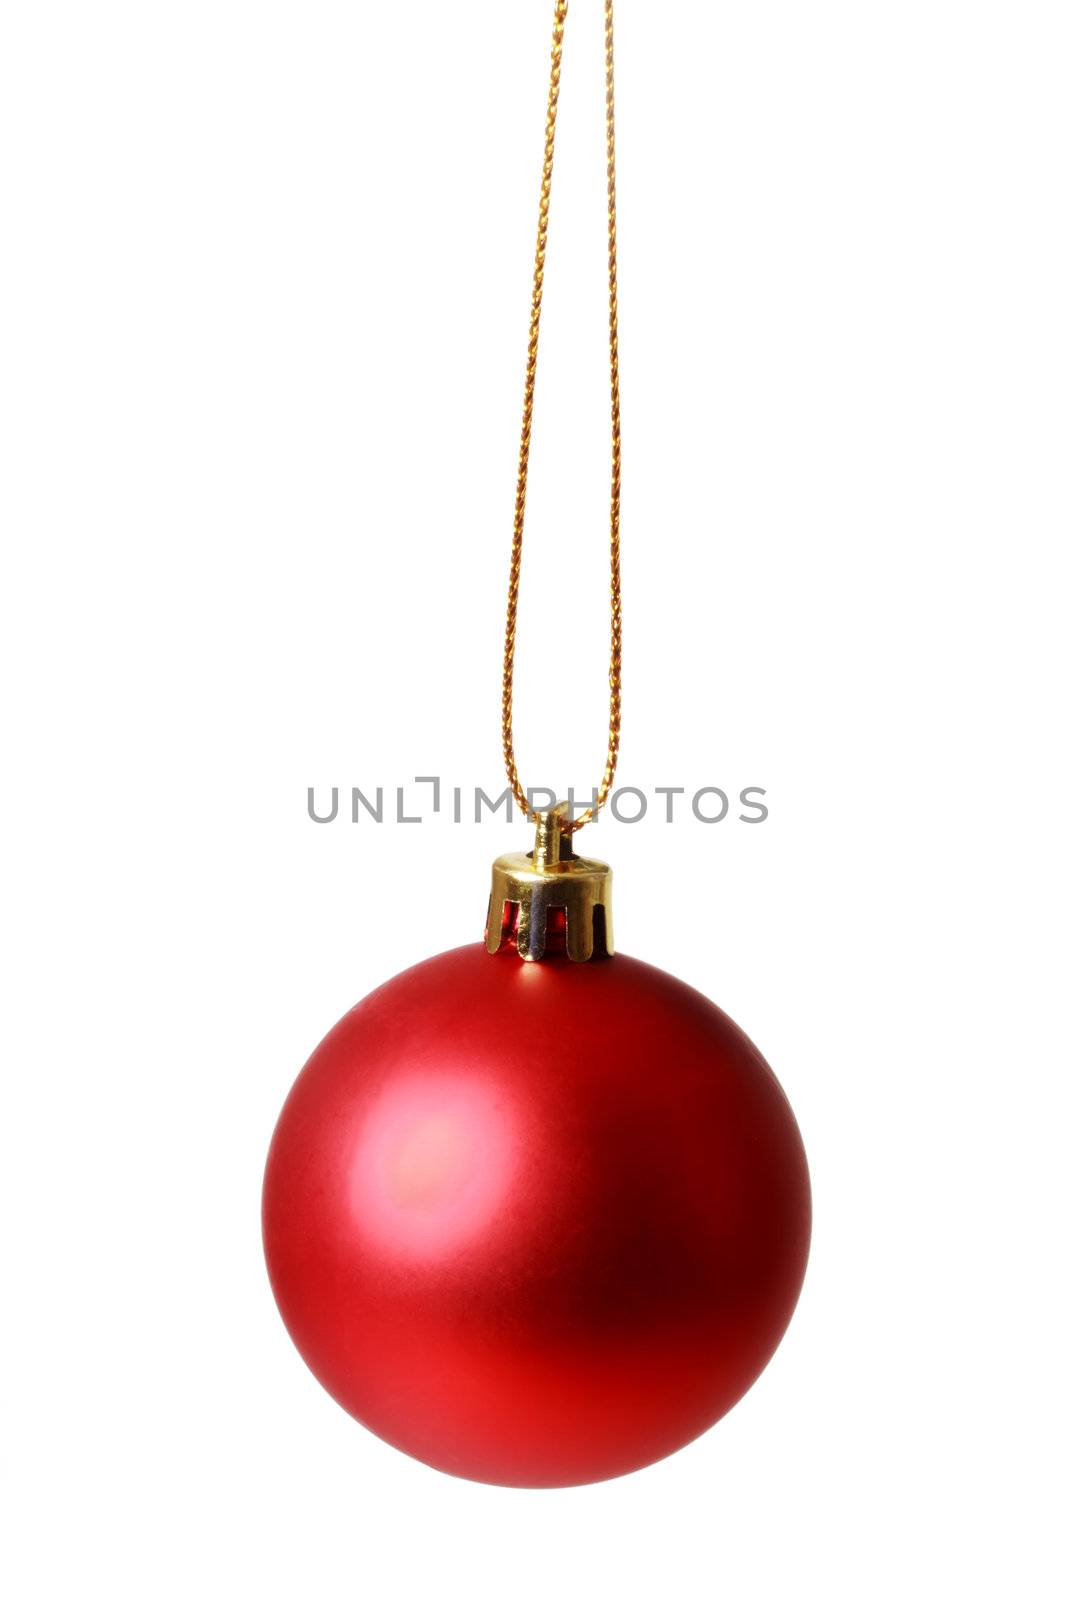 Red Christmas Ornament by melpomene